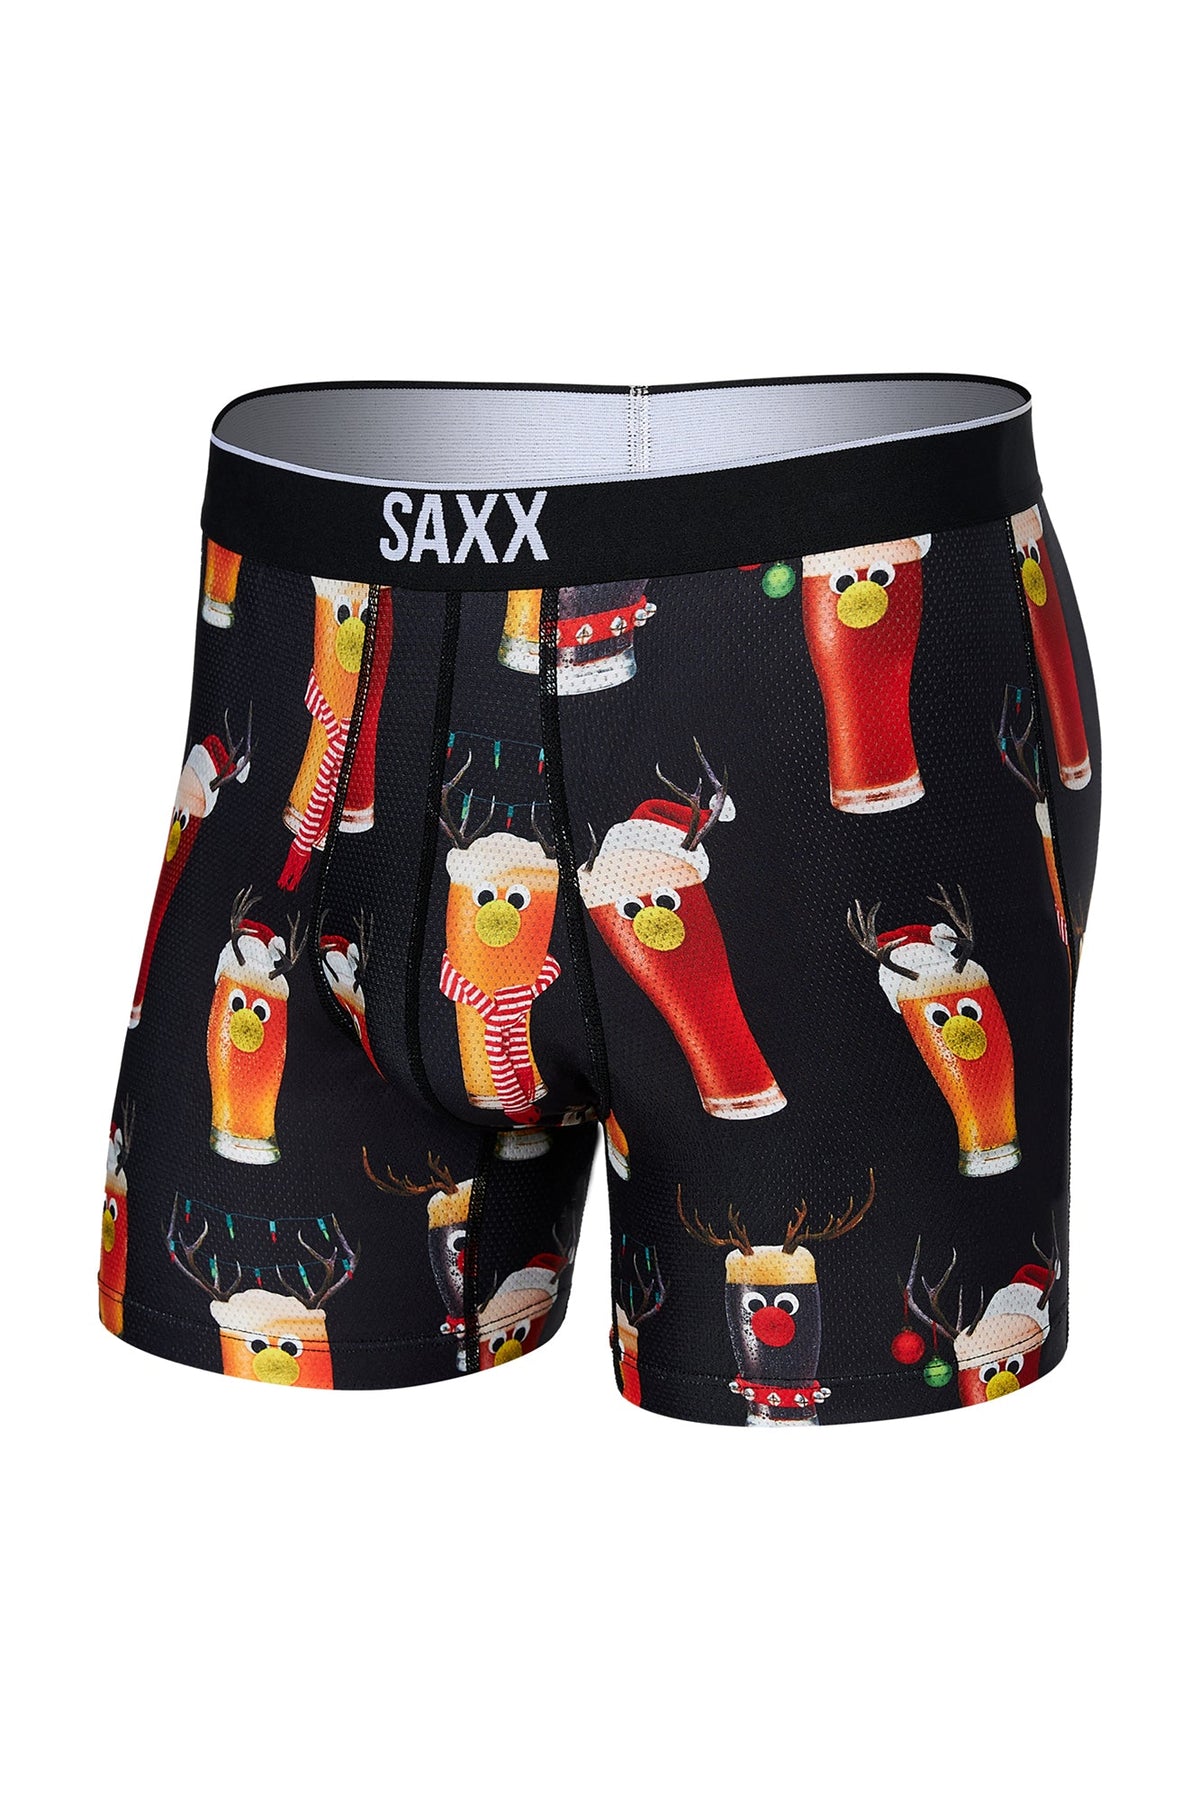 Boxer pour homme par Saxx | Volt SXBB29 RBB | Boutique Vvög, vêtements mode pour homme et femme